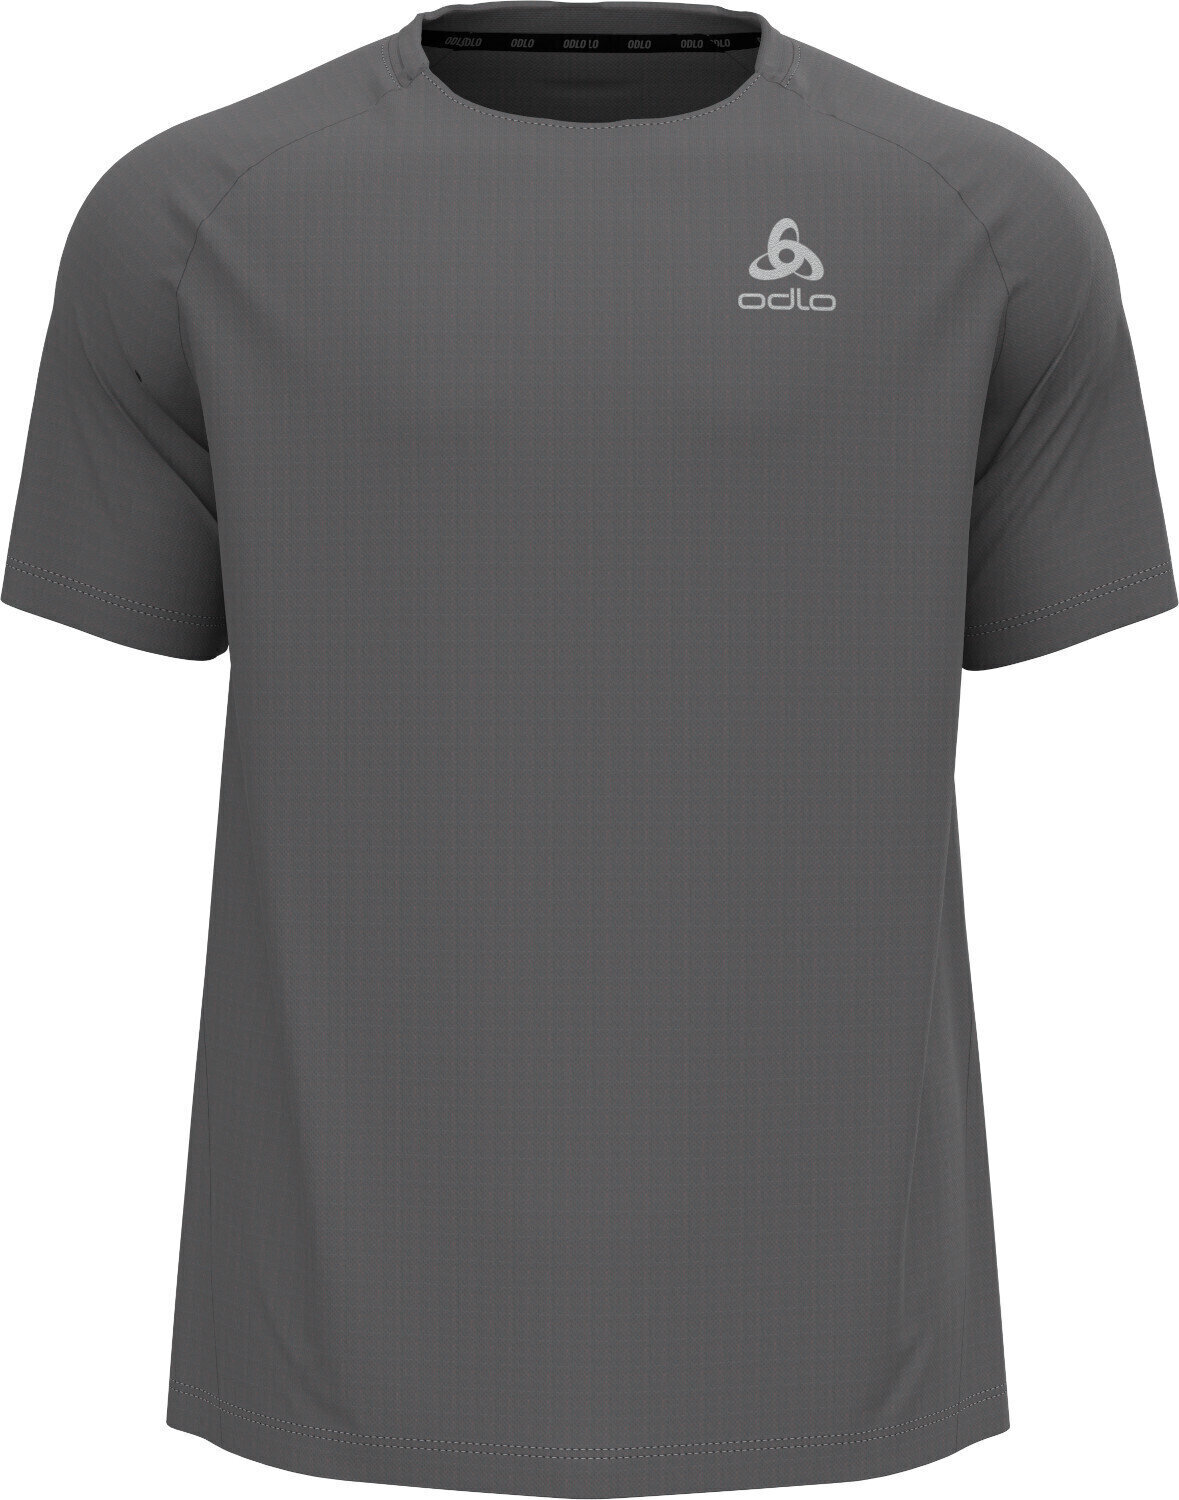 Bežecké tričko s krátkym rukávom Odlo Essential T-Shirt Steel Grey M Bežecké tričko s krátkym rukávom